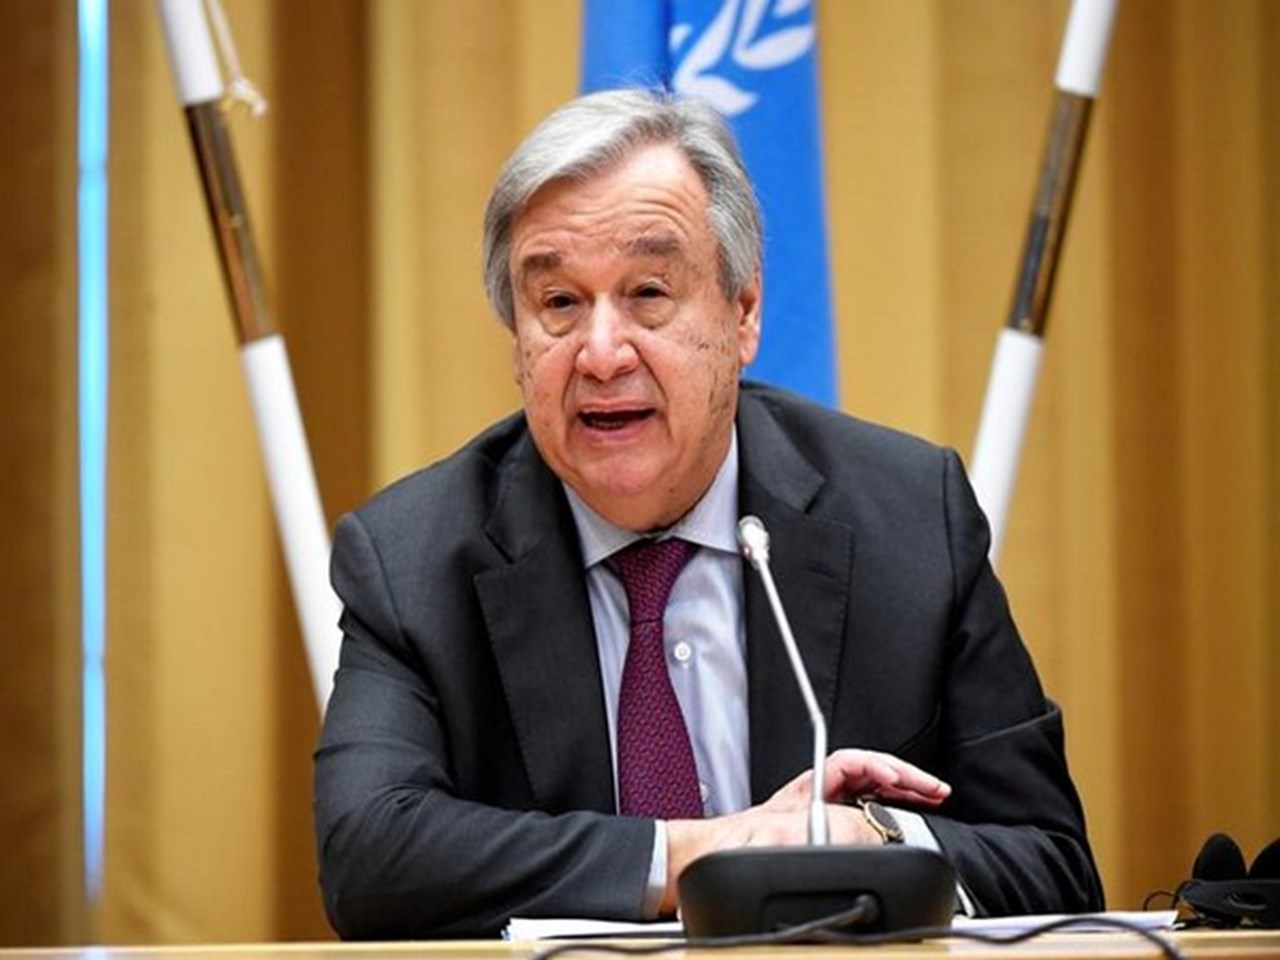 Sekretaris Jenderal PBB mengatakan sudah waktunya untuk mereformasi Dewan Keamanan Bretton Woods